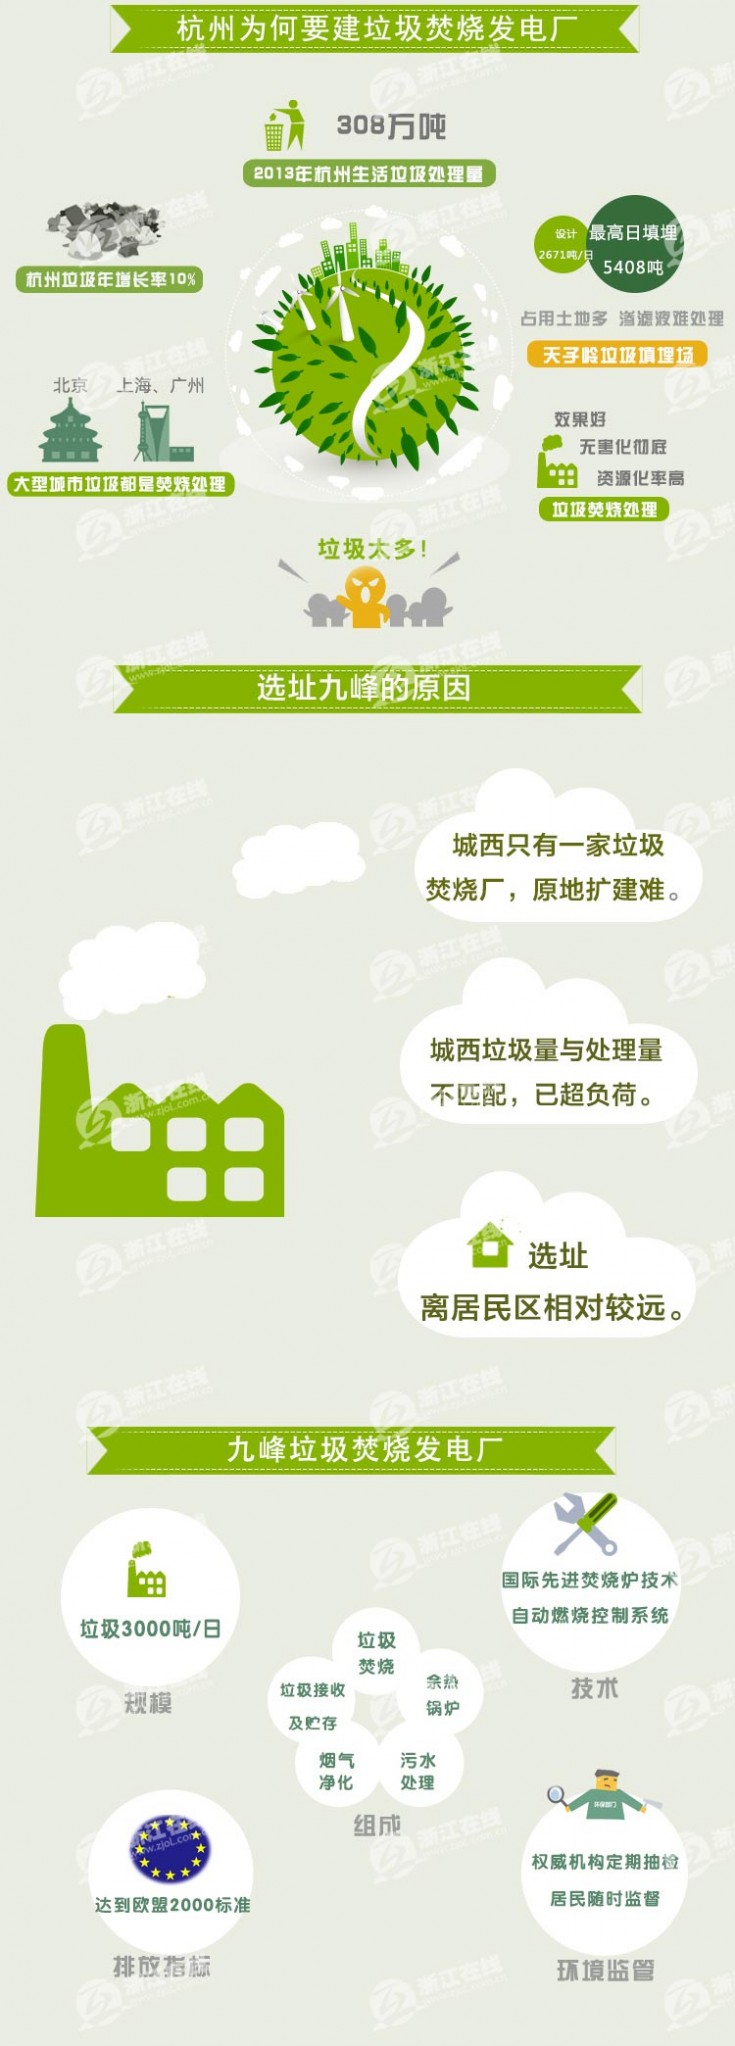 杭州垃圾焚烧厂 一张图解读杭州余杭垃圾焚烧发电厂项目 做好分类是民众力所能及